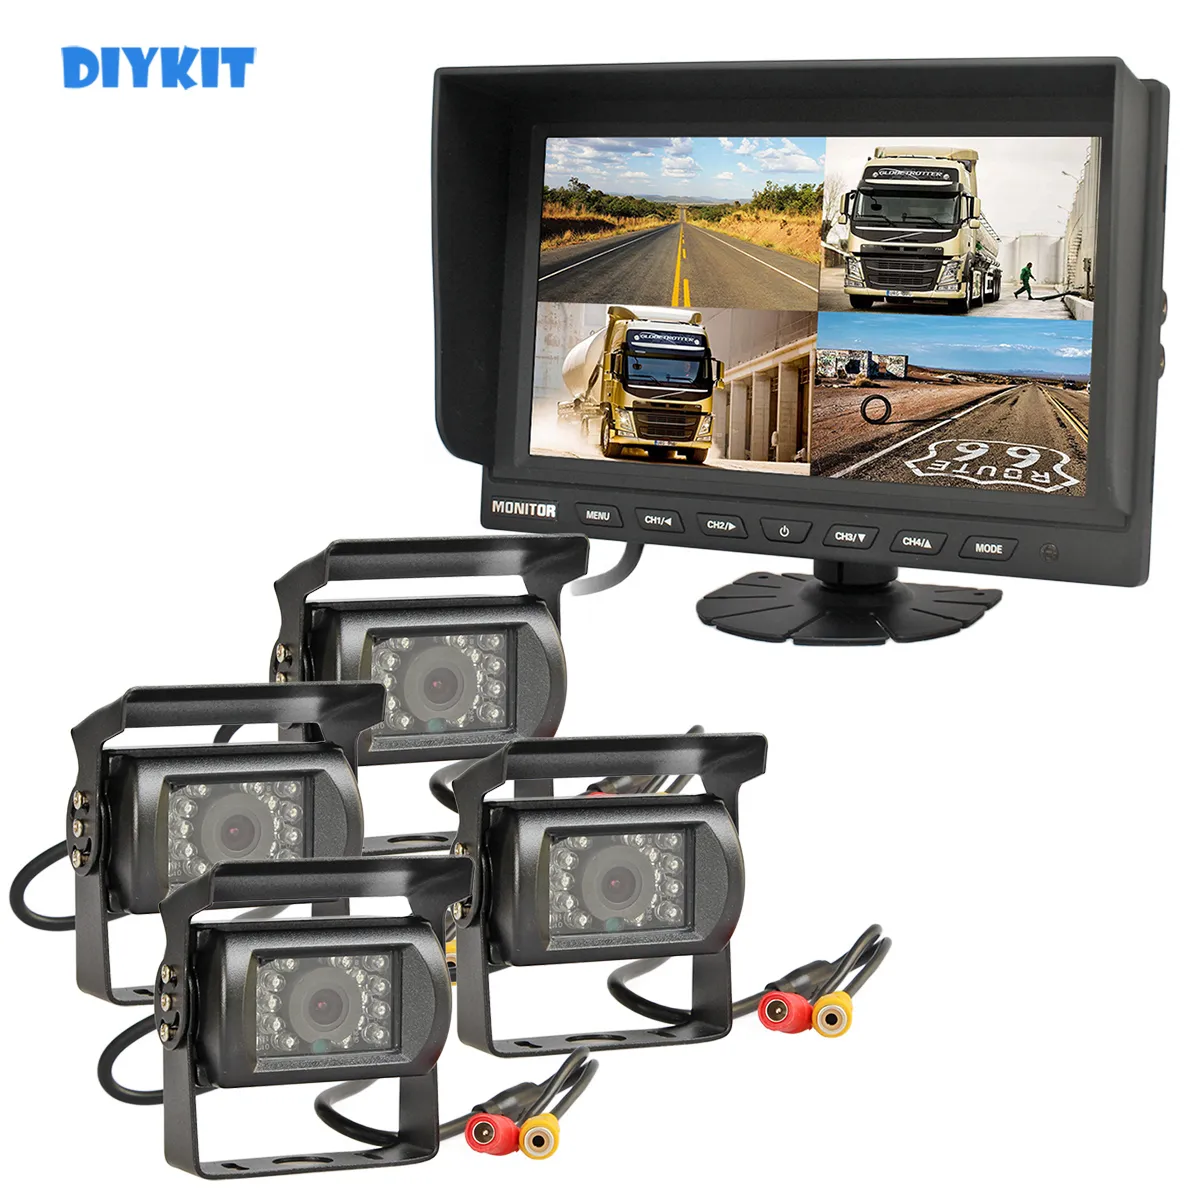 DIYKIT 4CH 9 pouces moniteur de voiture camion tracteur système de sécurité de recul 4 x CCD Kit de caméra de recul pour voiture camion Bus caméra de recul